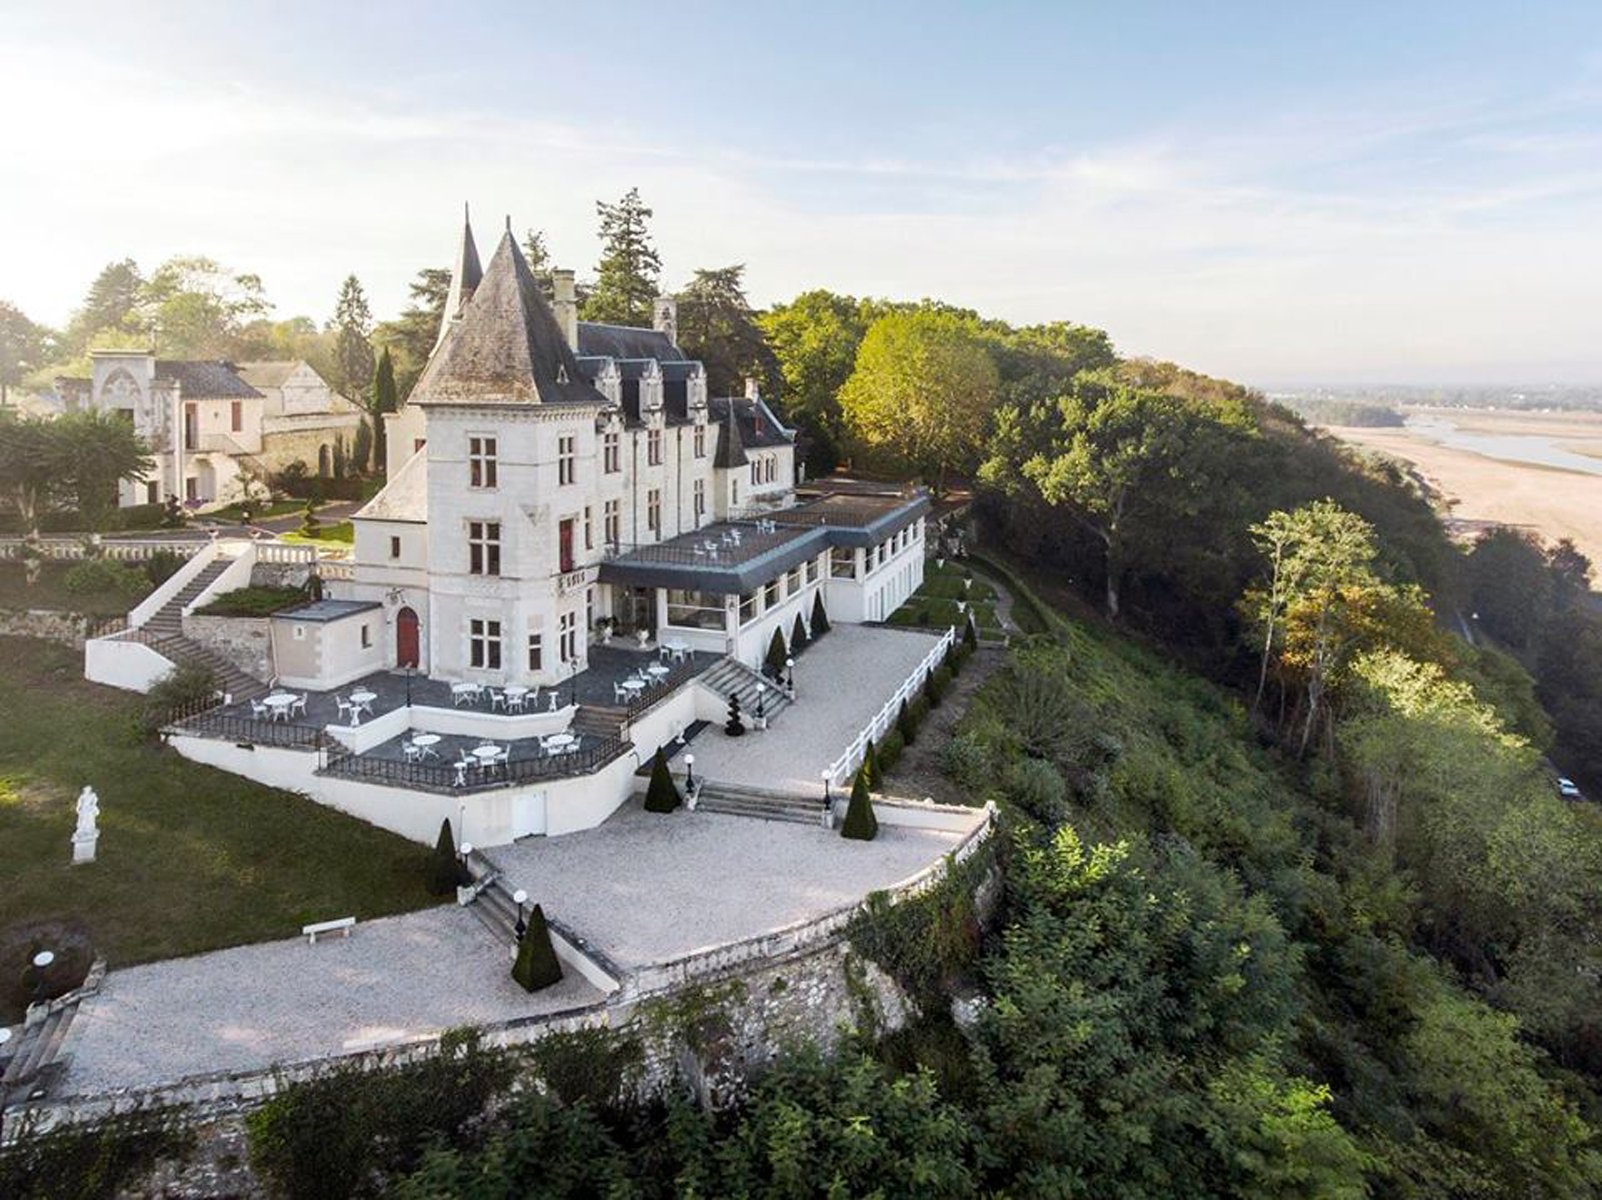 Château le Prieuré | Hotel 4 étoiles, restaurant gastronomique, vue panoramique sur la Loire | En Val de Loire, à 10 min de Saumur, France